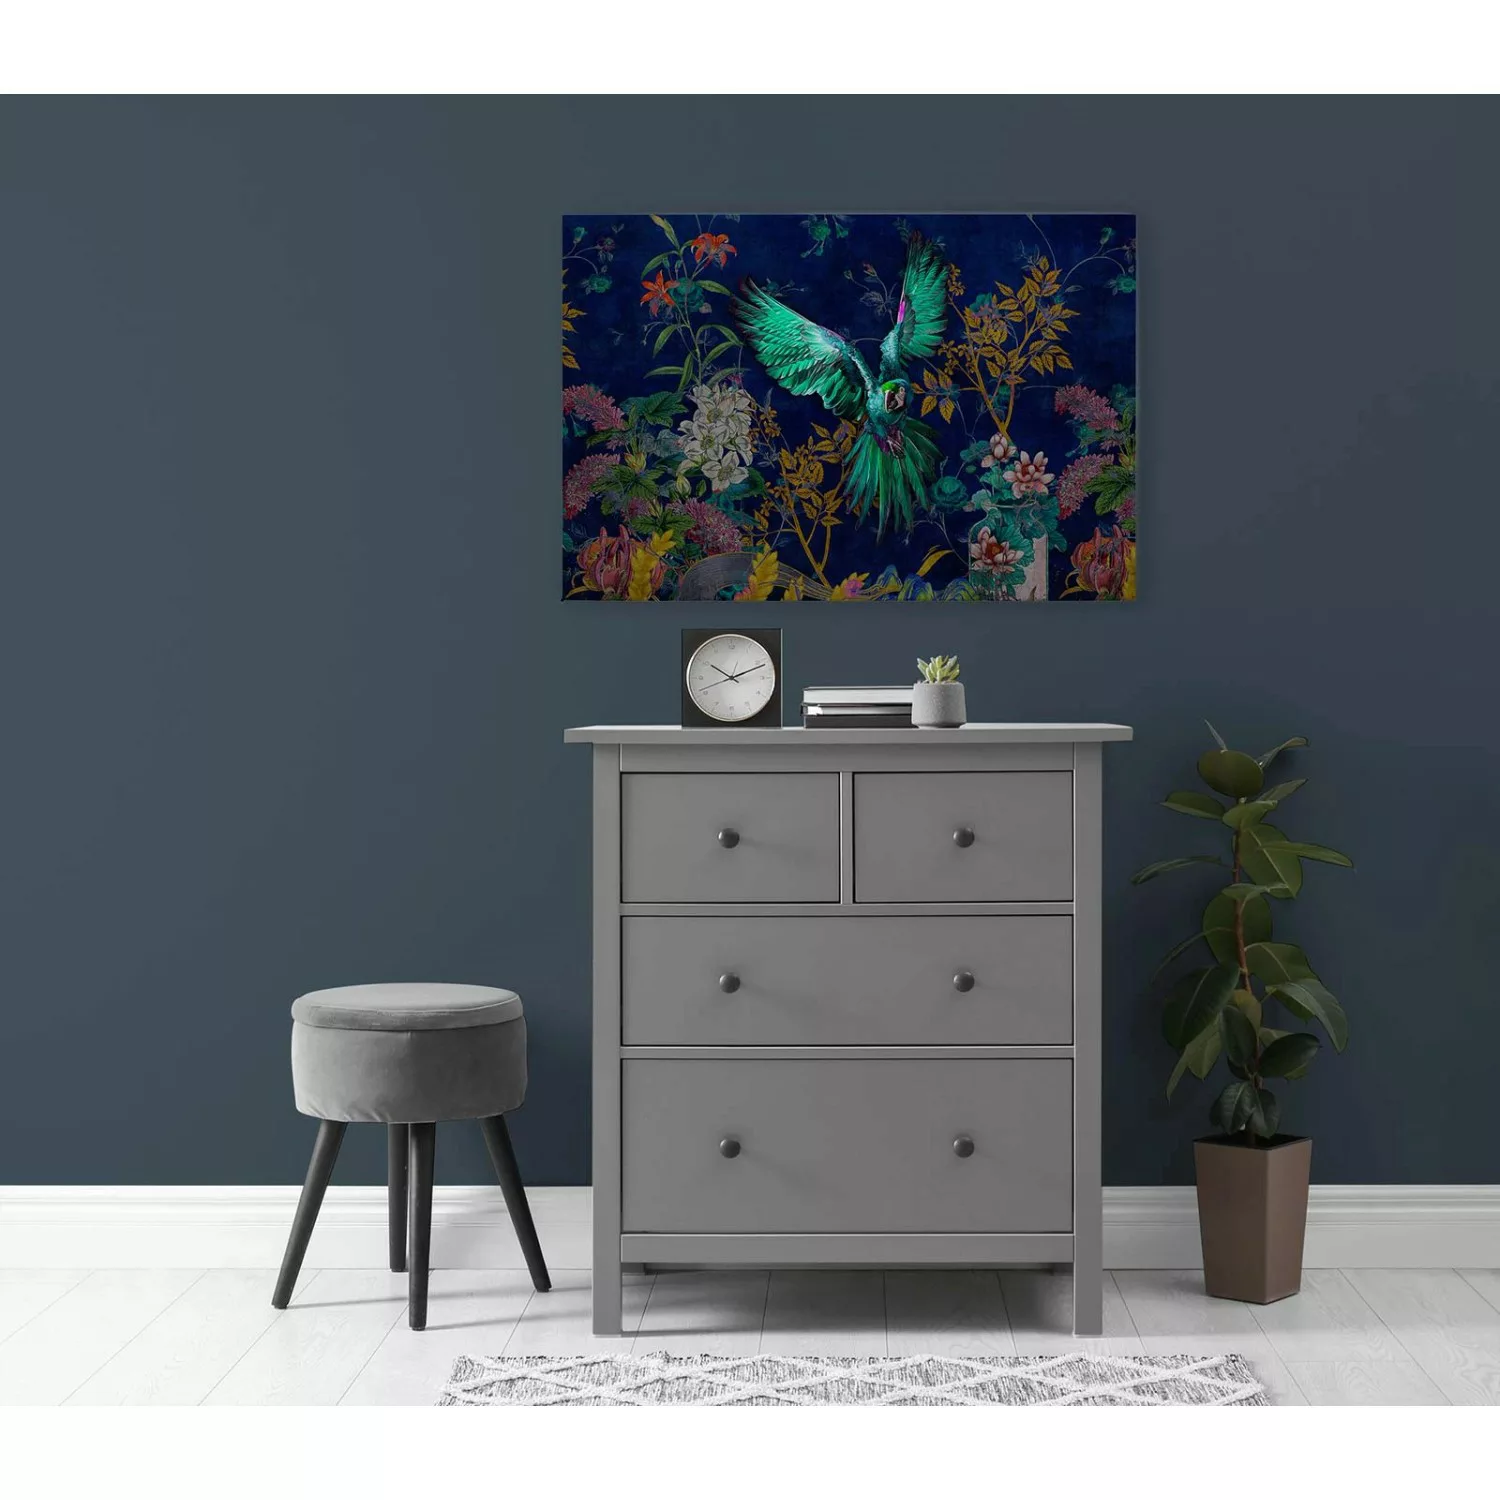 Bricoflor Bild Papagei Auf Leinwand 90 X 60 Cm Wandbild Mit Vogel In Neonfa günstig online kaufen